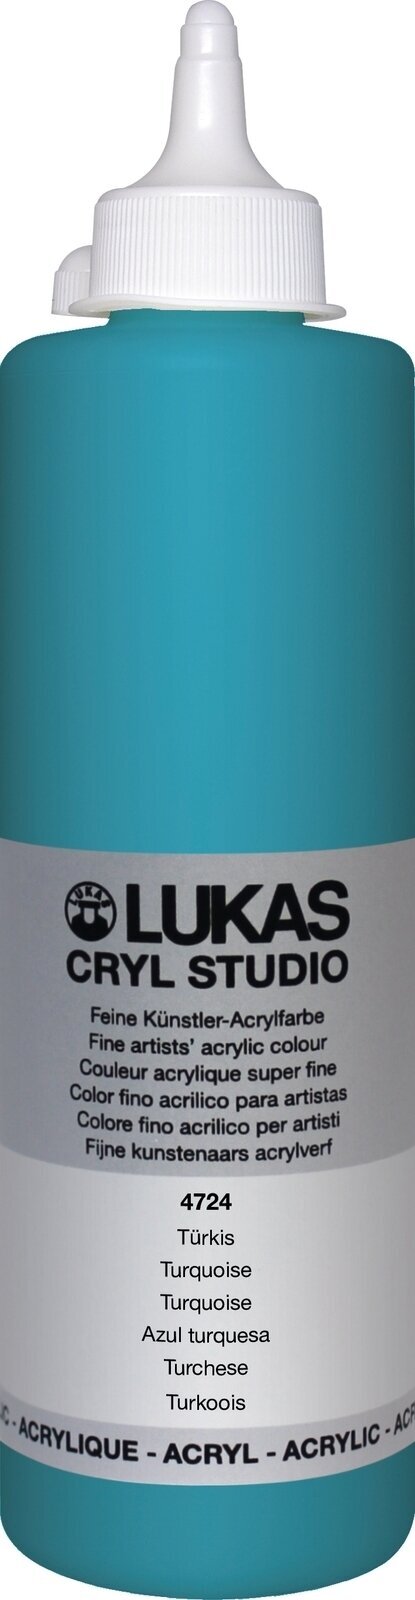 Peinture acrylique Lukas Cryl Studio Acrylic Paint Plastic Bottle Peinture acrylique Turquoise 500 ml 1 pc